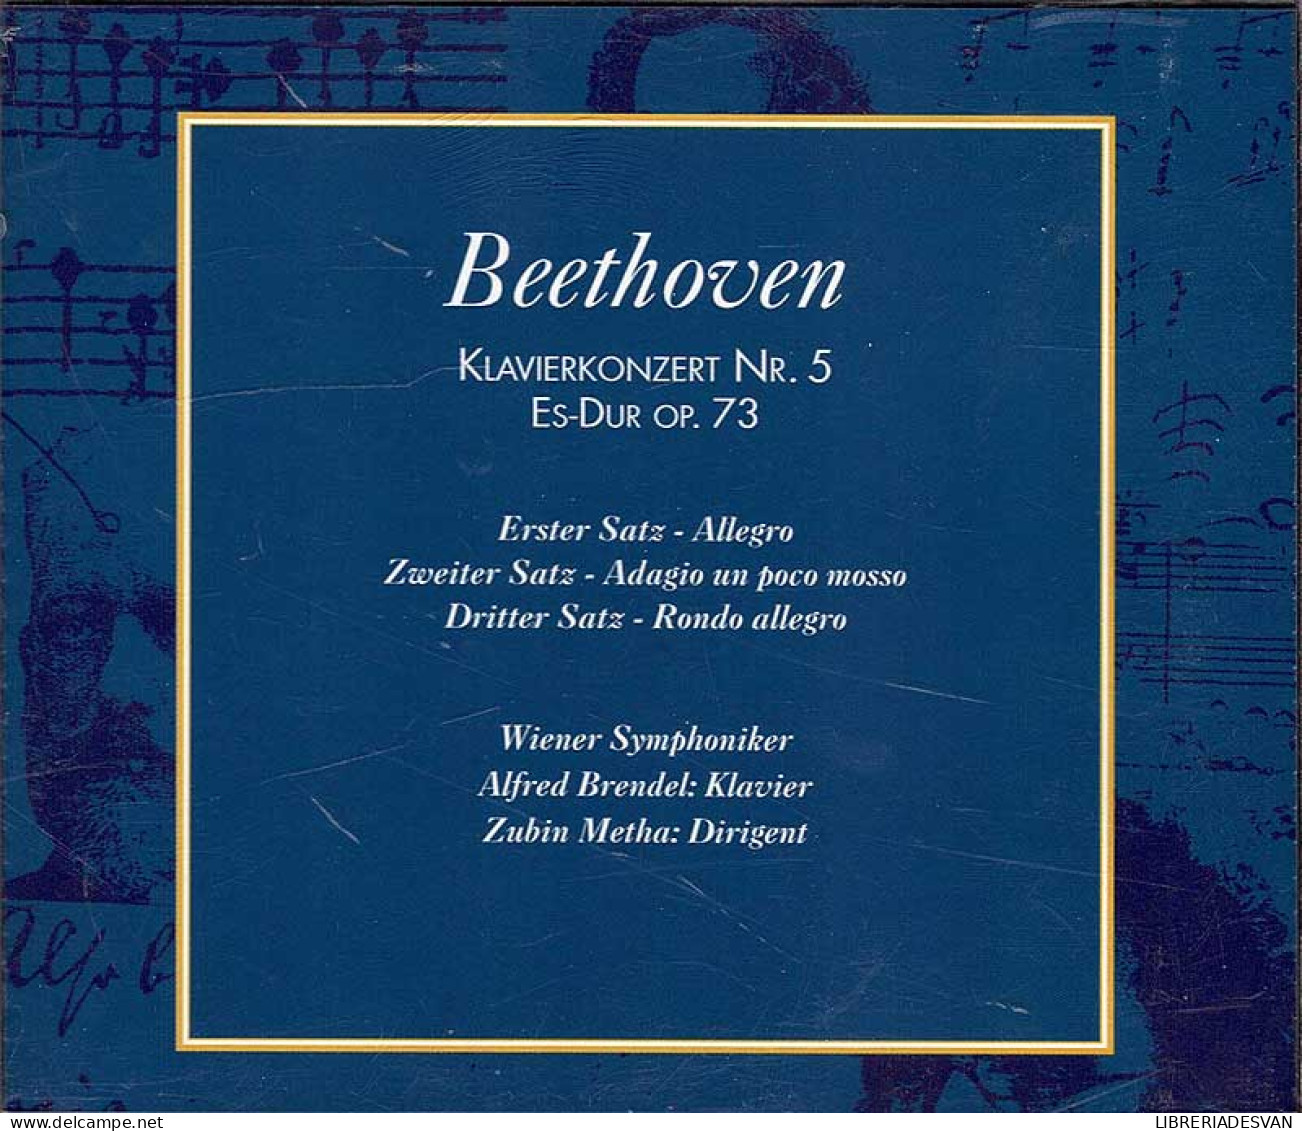 Beethoven - Klavierkonzert No. 5 Es-Dur Opus 73. CD - Classical